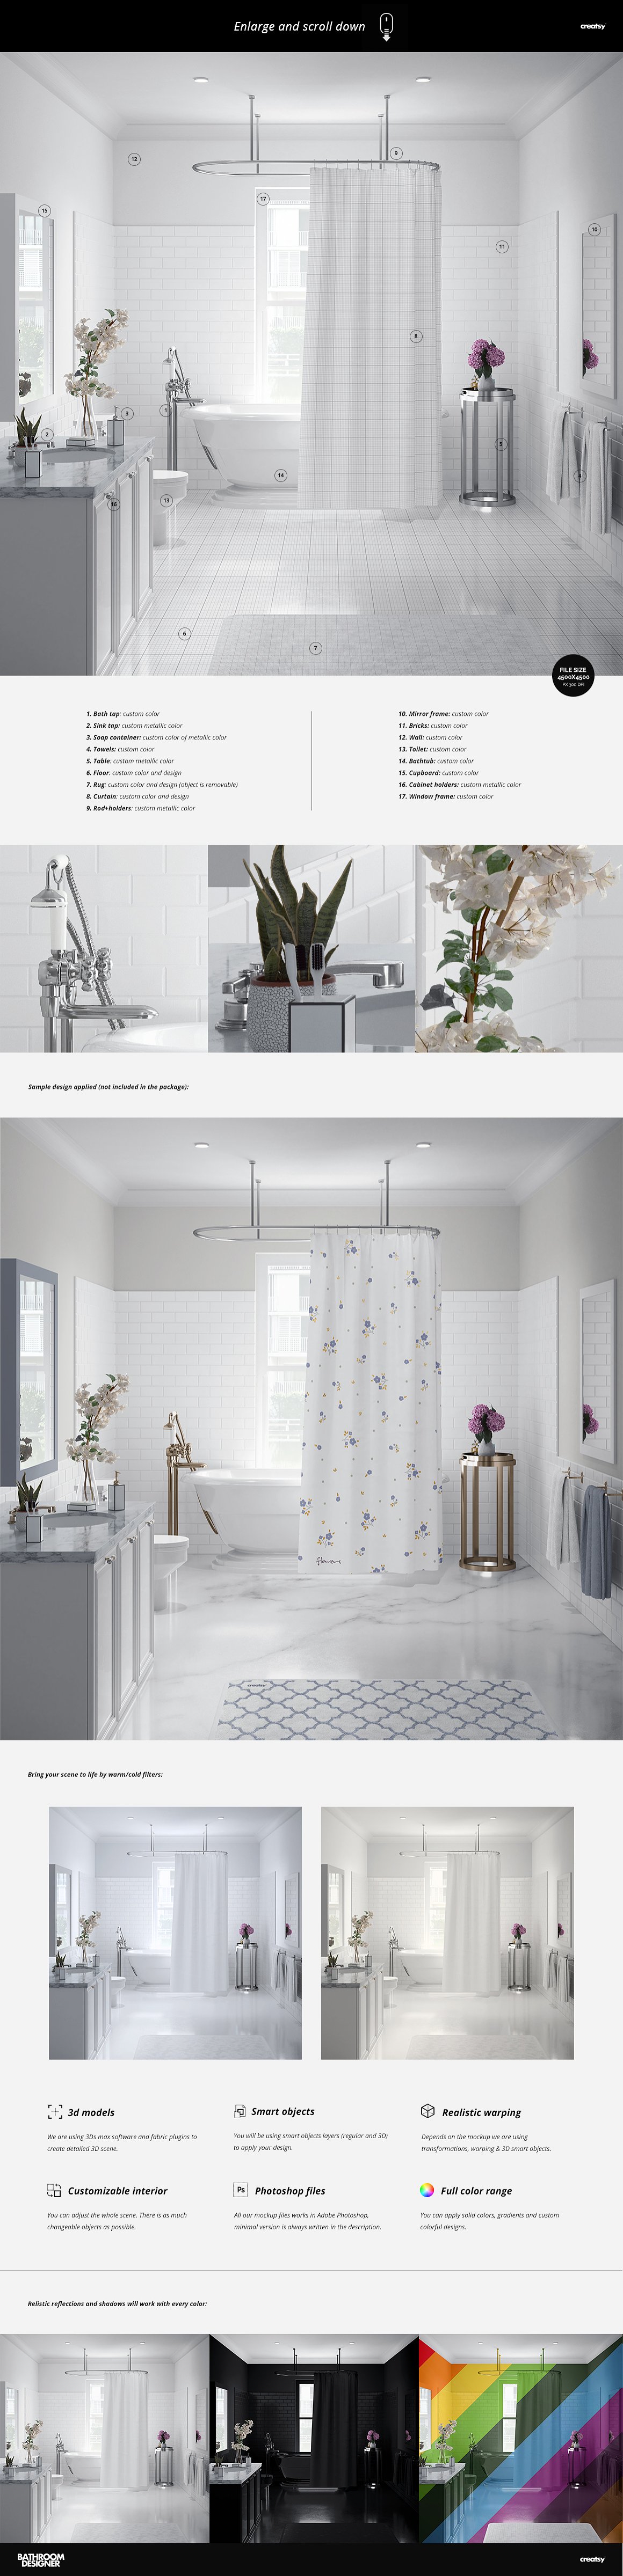 豪华浴帘浴缸毛巾浴室场景装修设计提案样机模板 Luxury